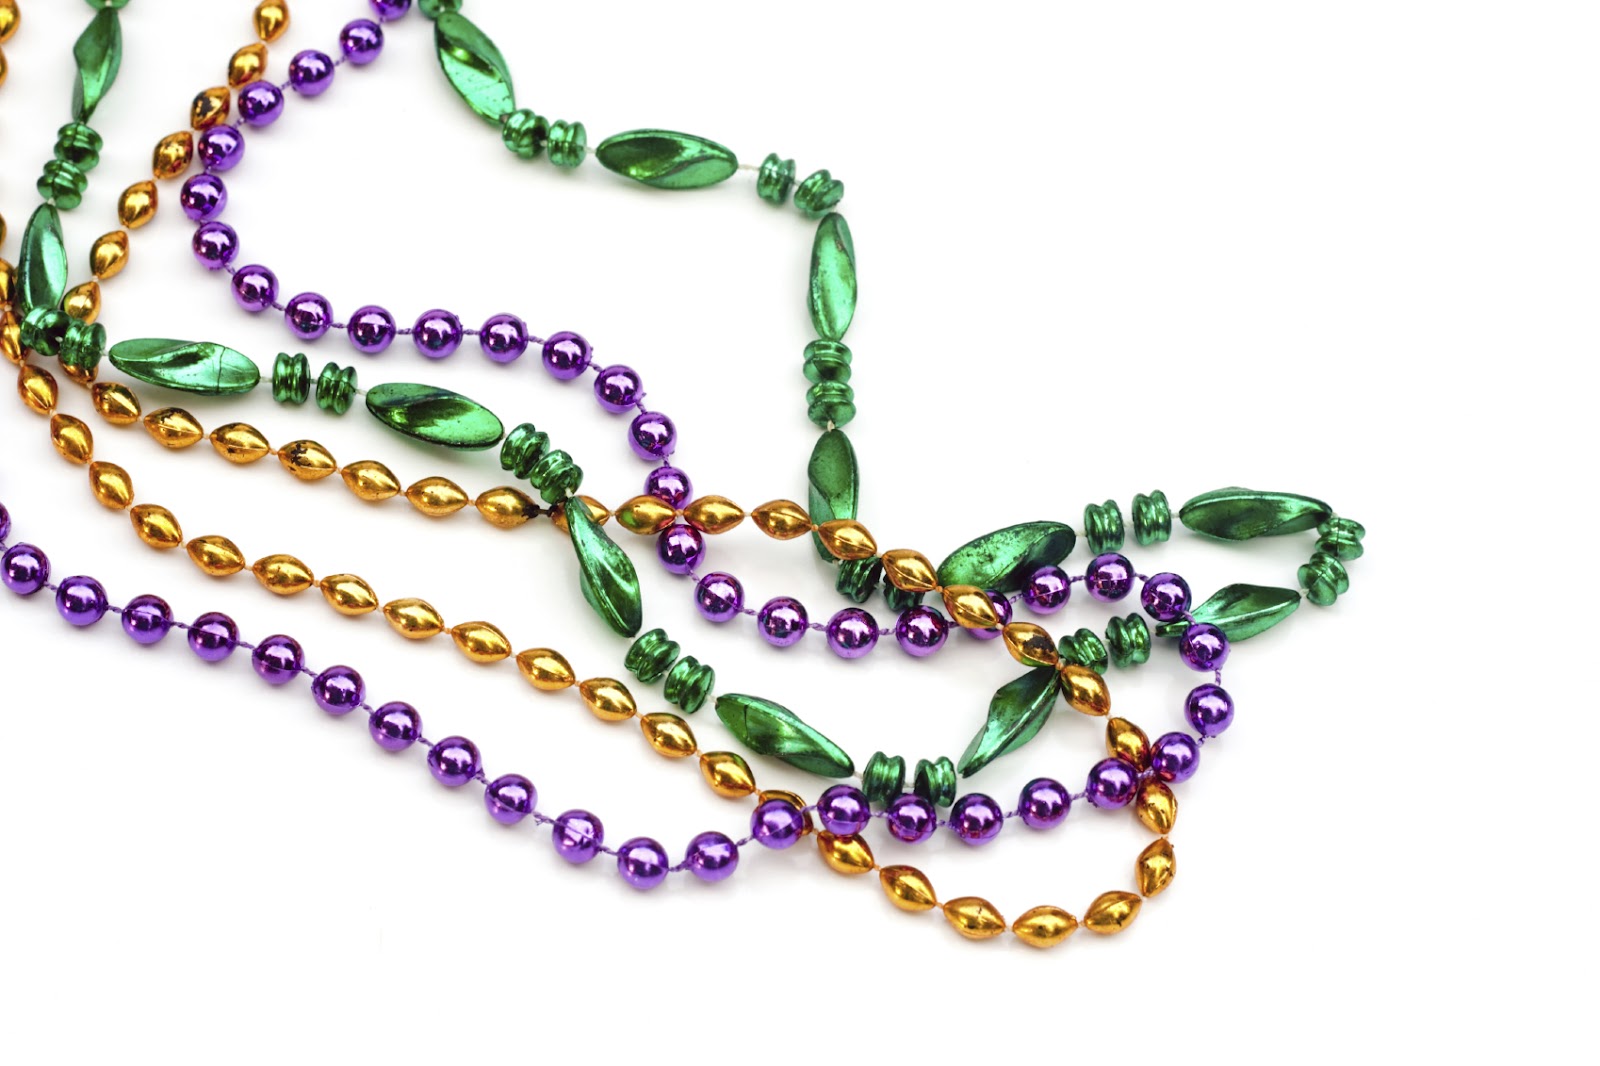 Mardi Gras Beads Stock Illust